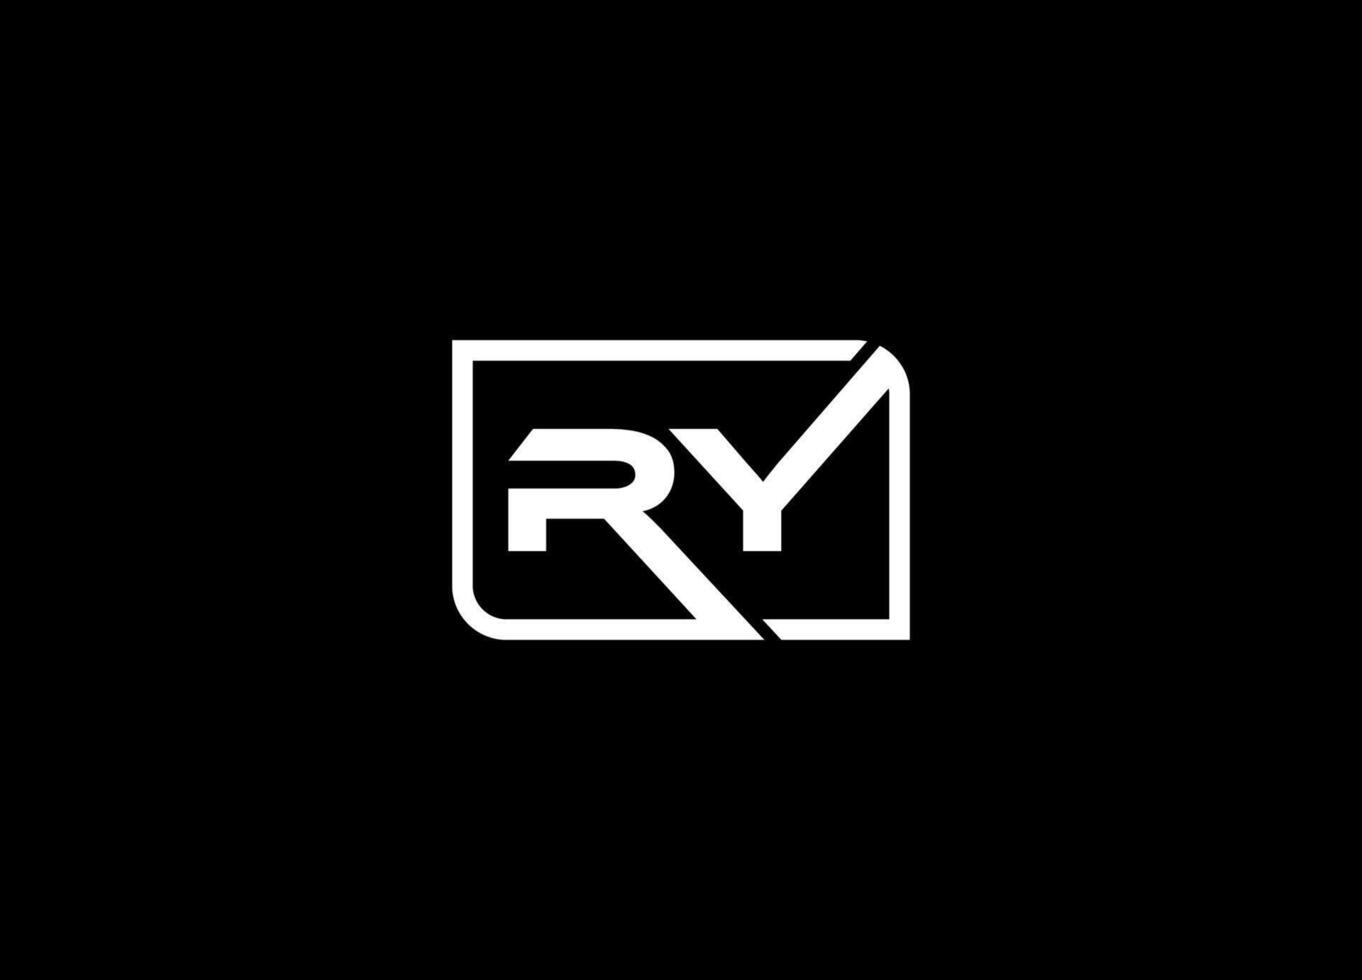 ry initiale lettre logo conception et monogramme logo vecteur